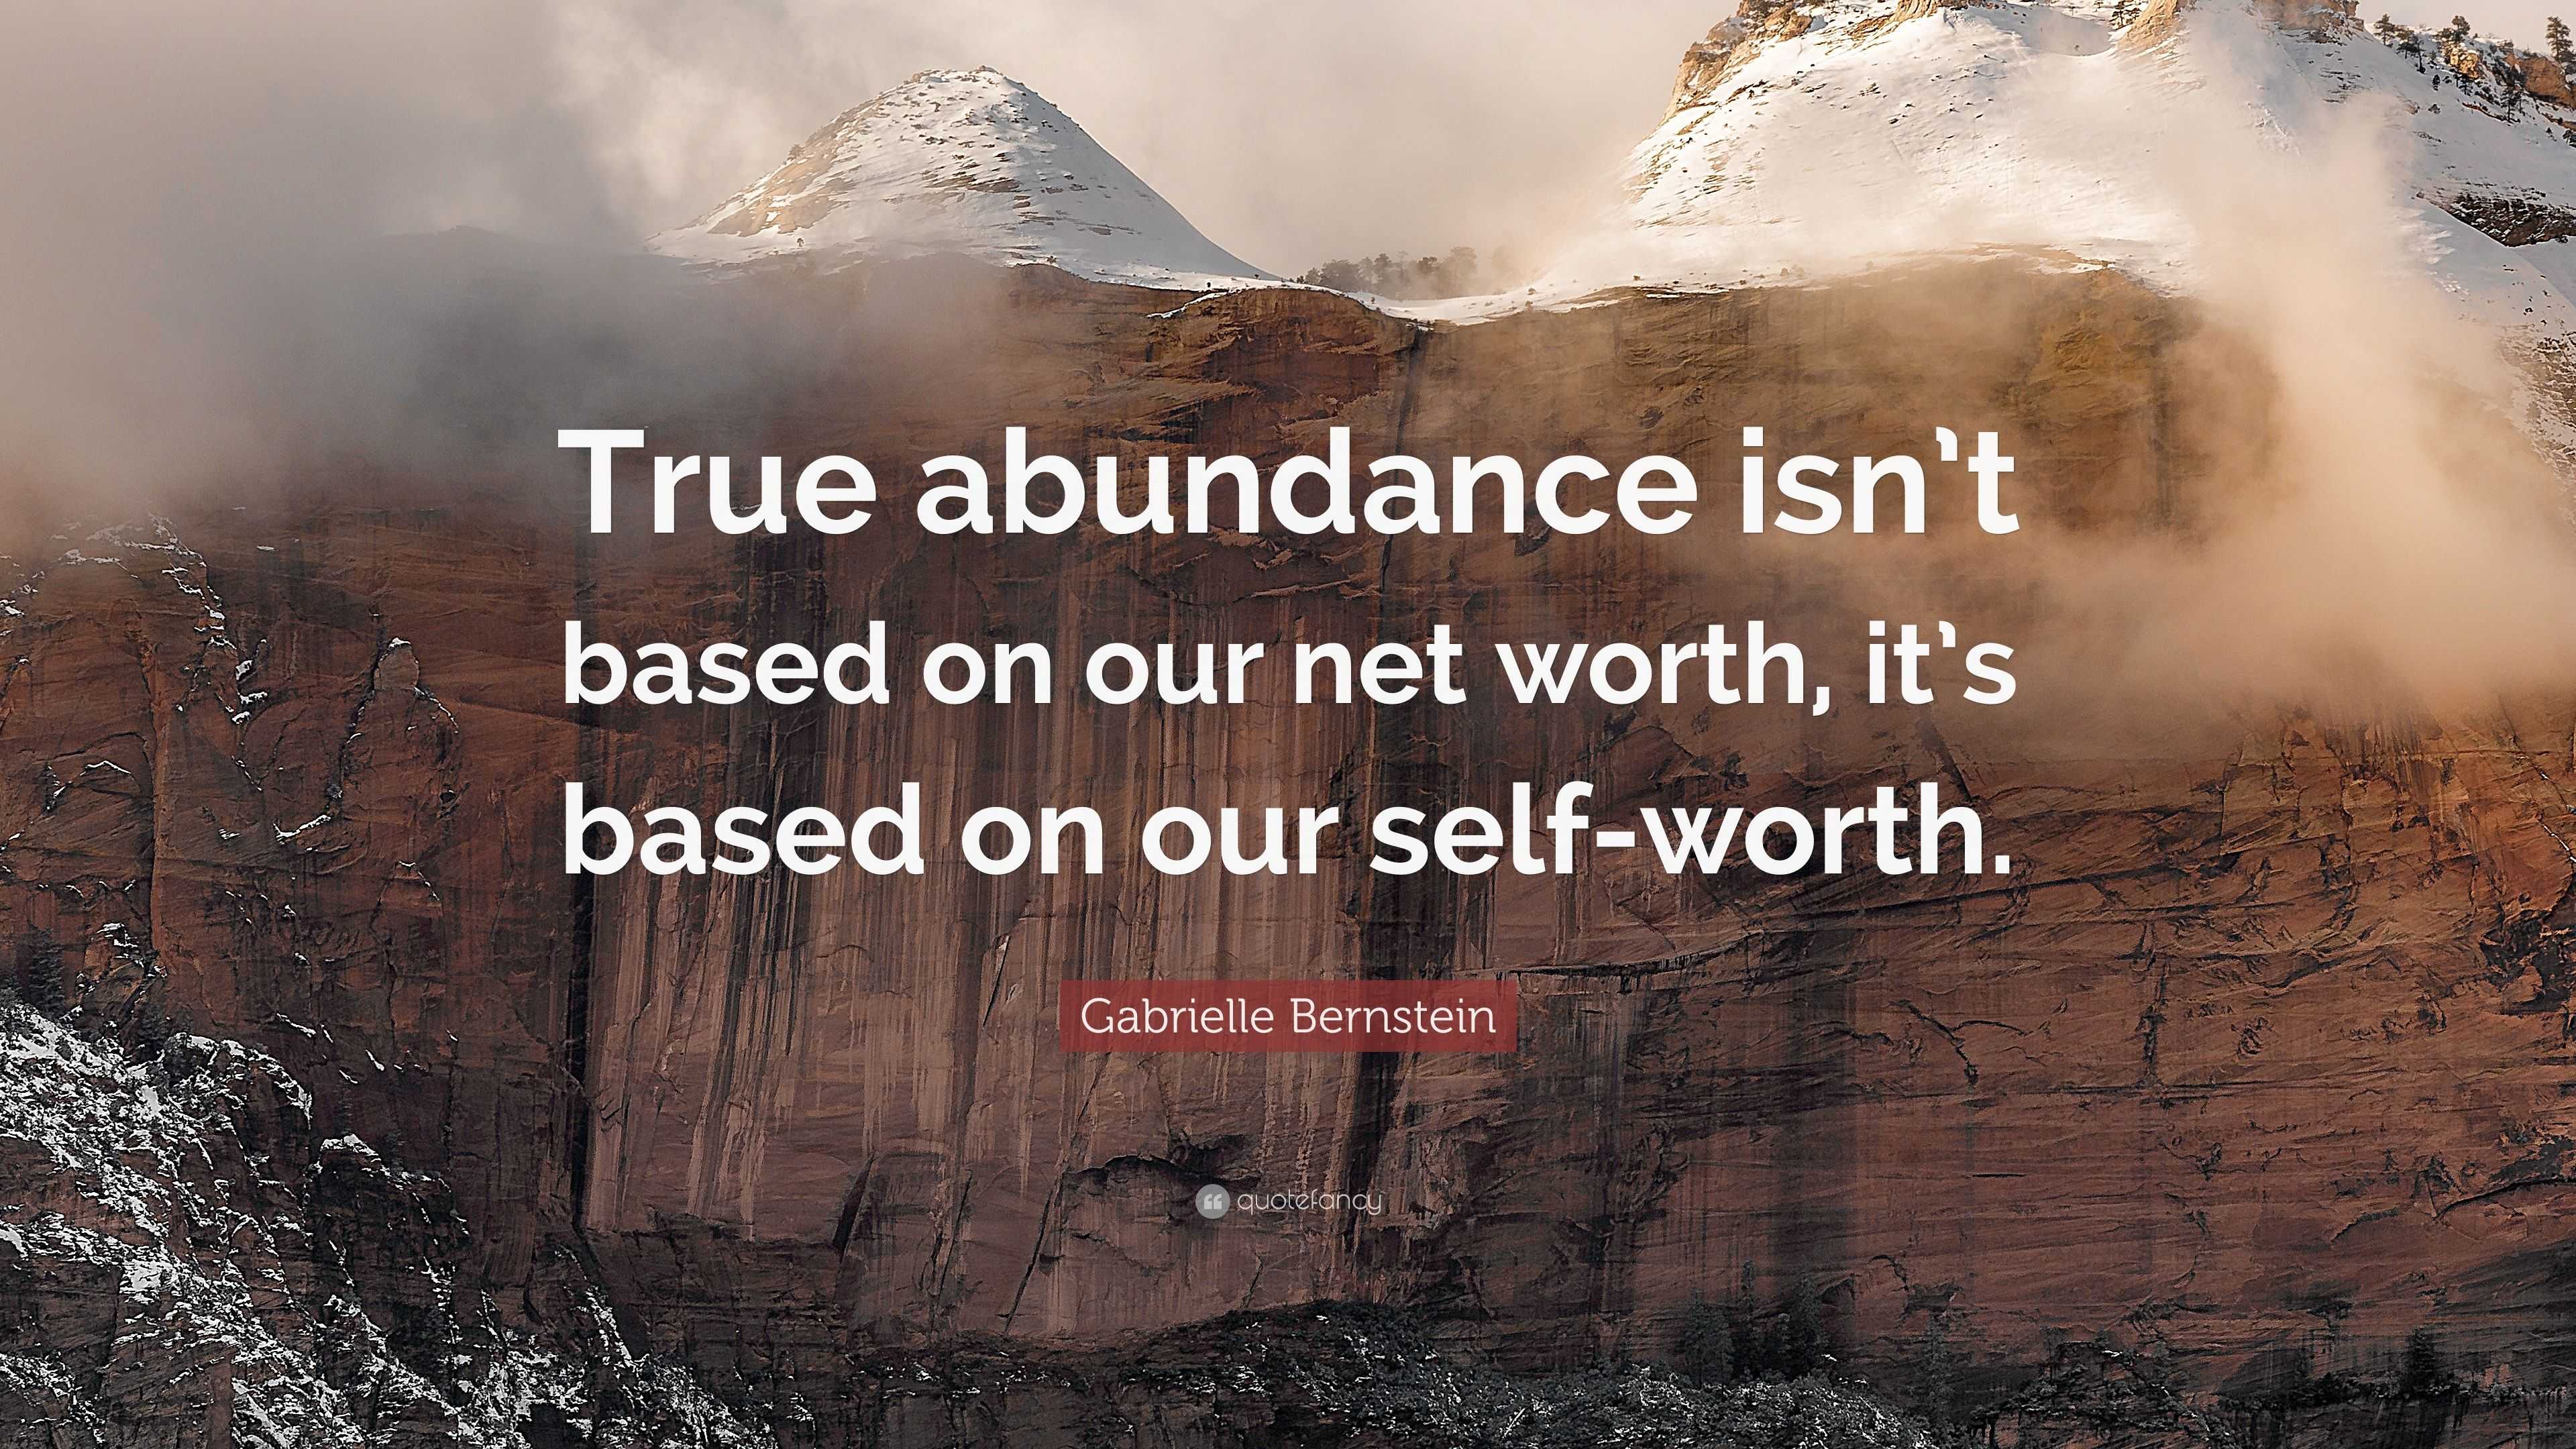 Gabrielle Bernstein Quote: “True abundance isn’t based on our net worth